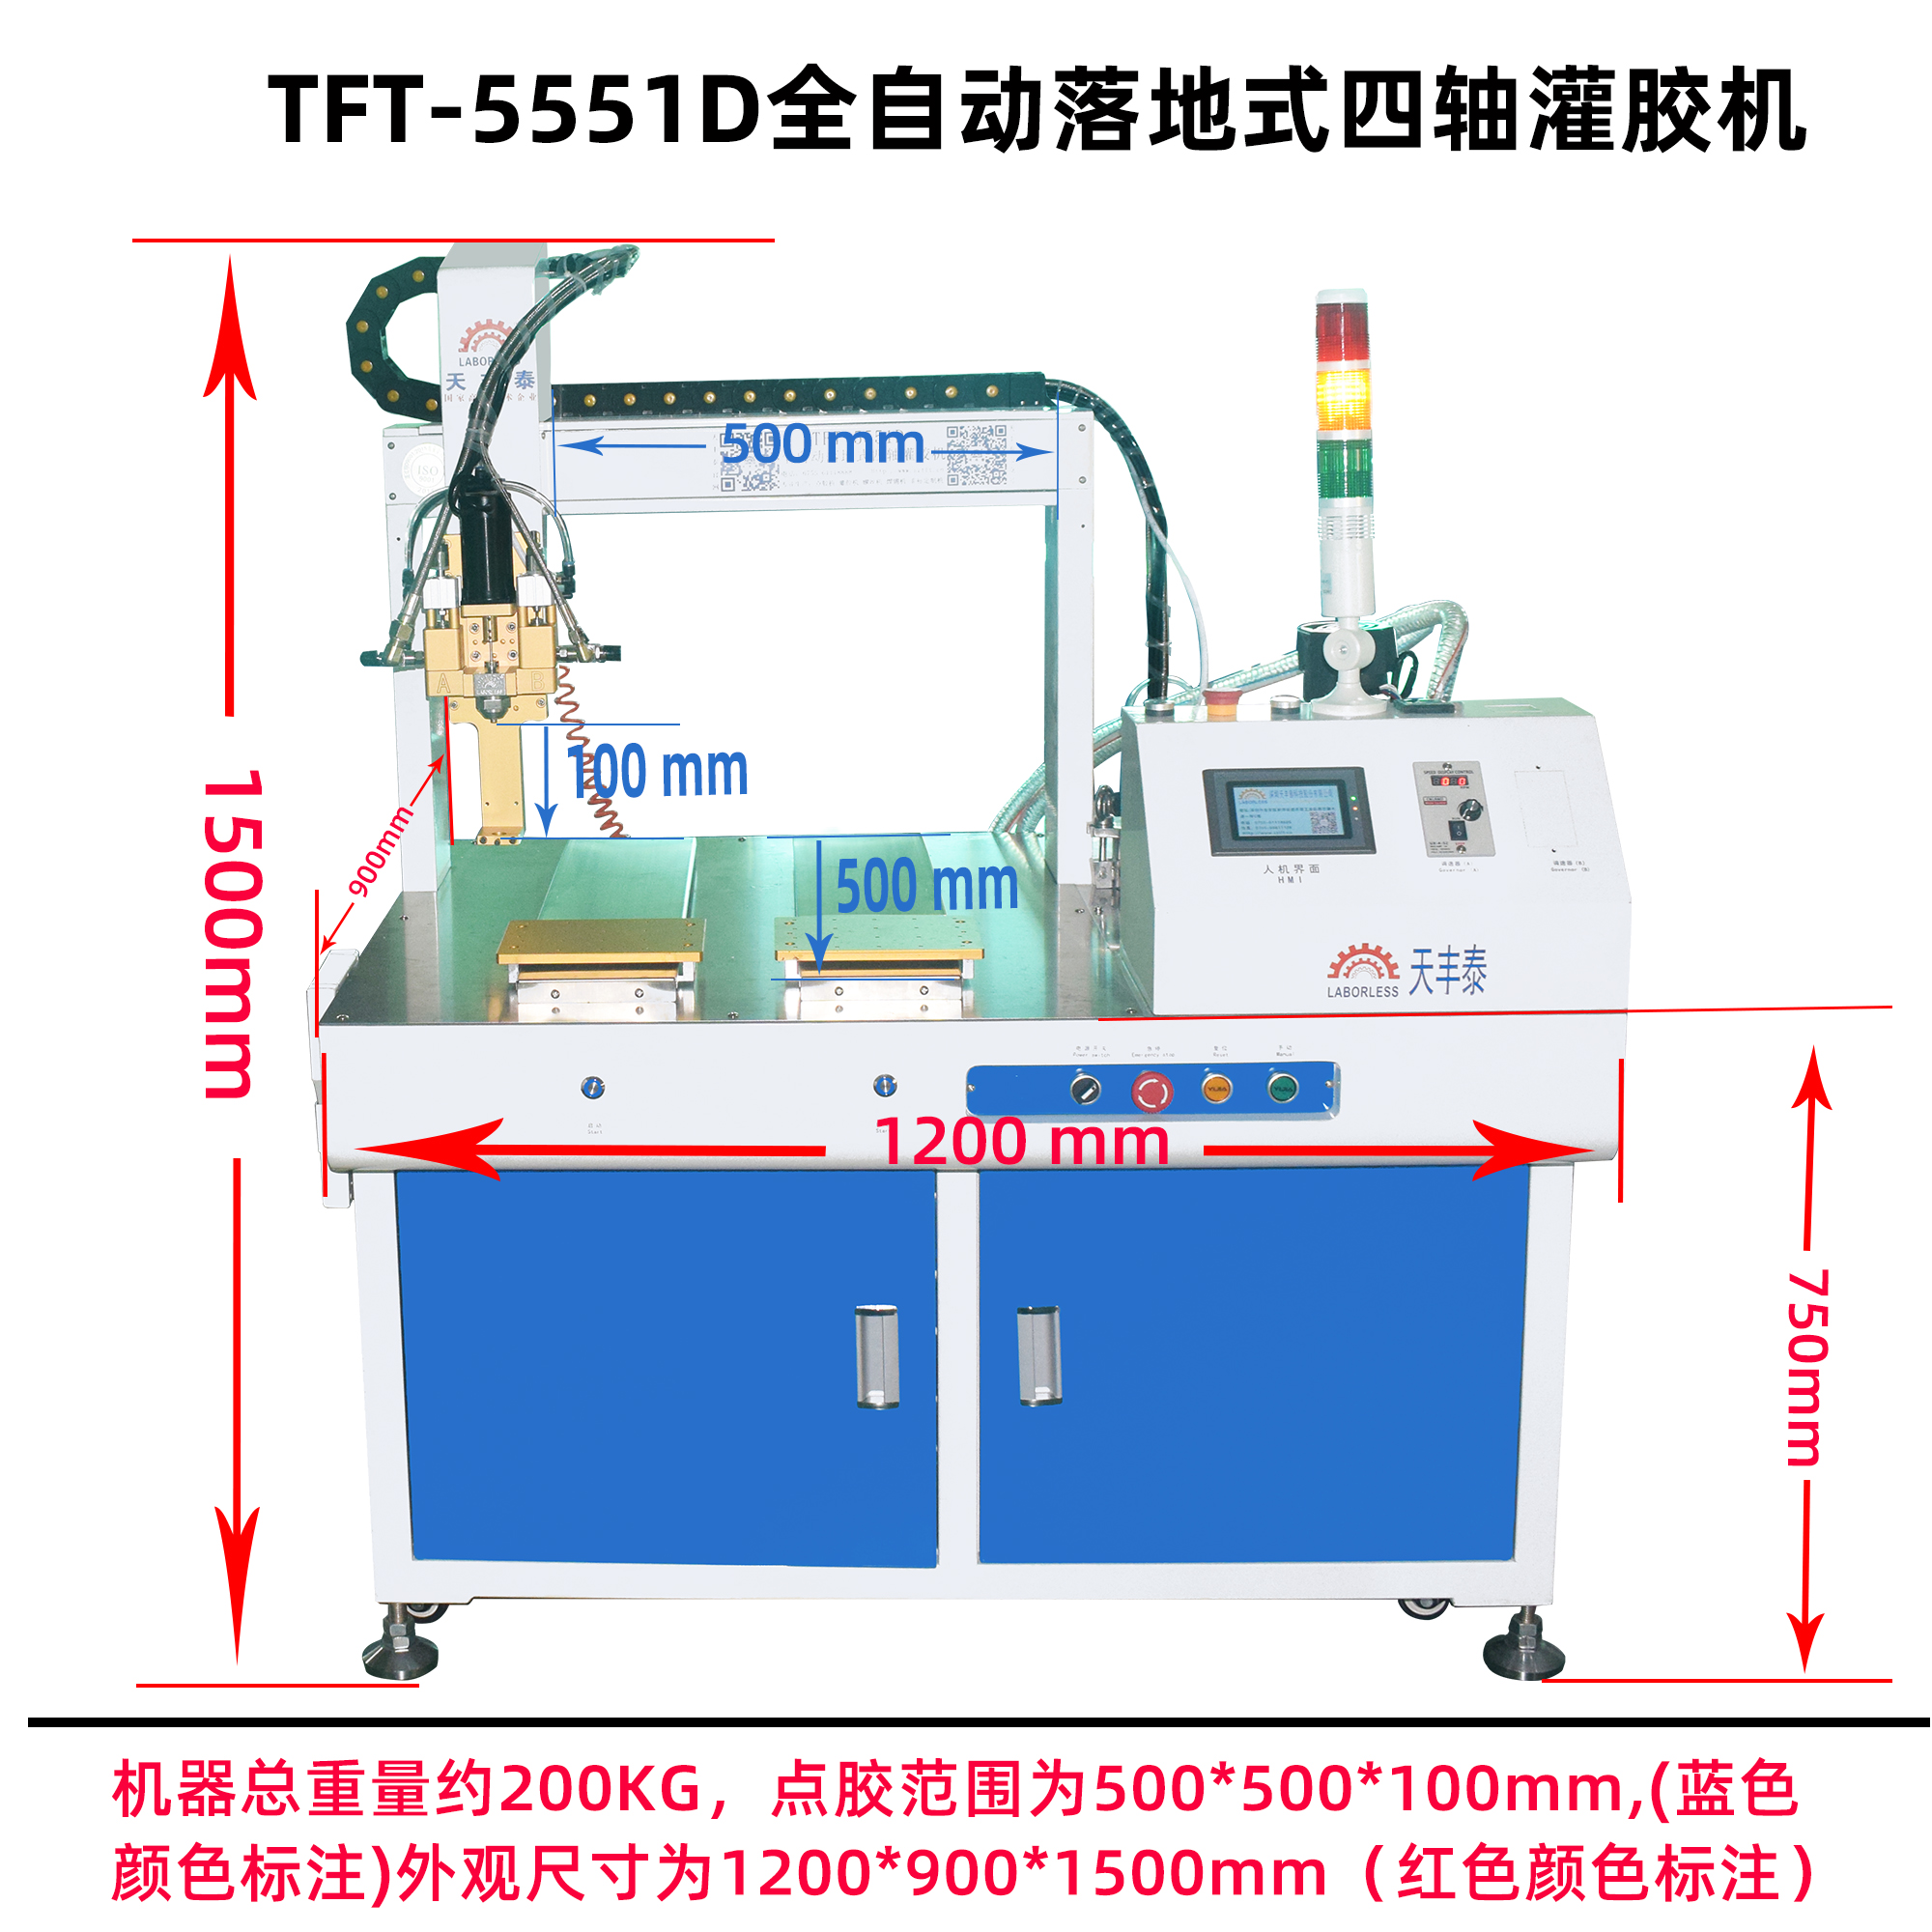 TFT-5551D全自動落地式四軸灌膠機產品尺寸圖